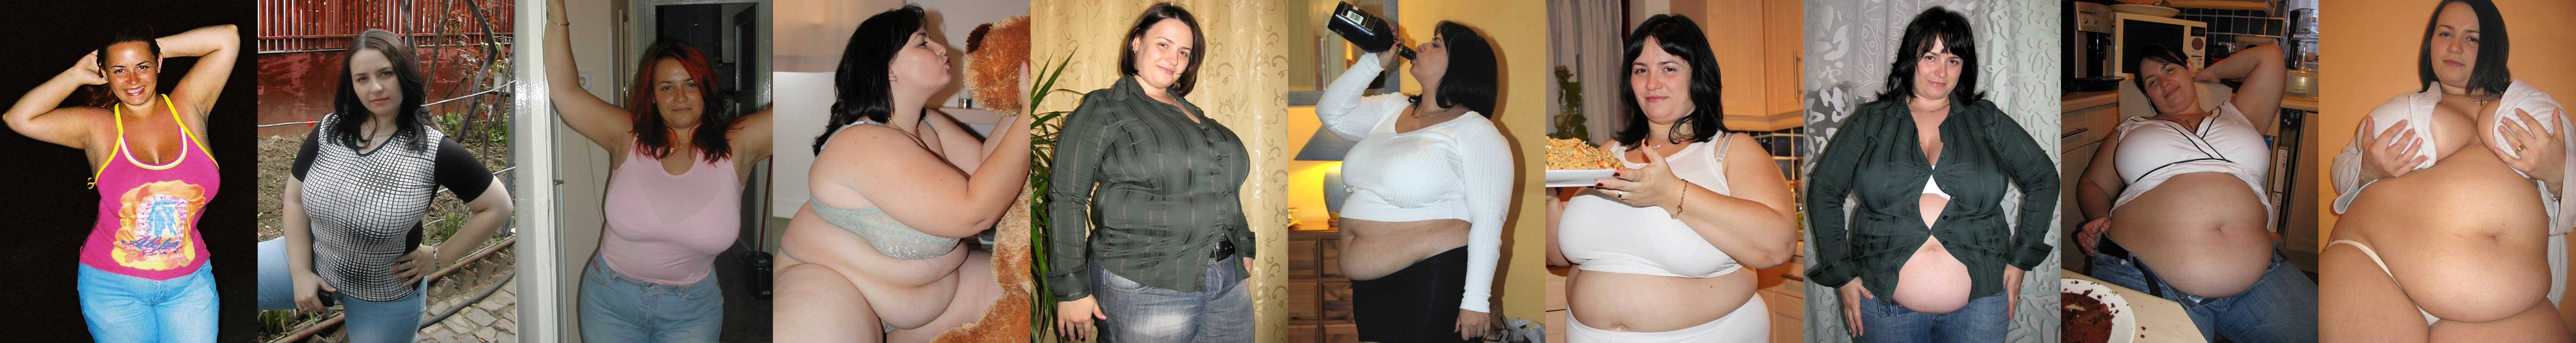 фиди до и после набора веса девушки в одинаковой одежде